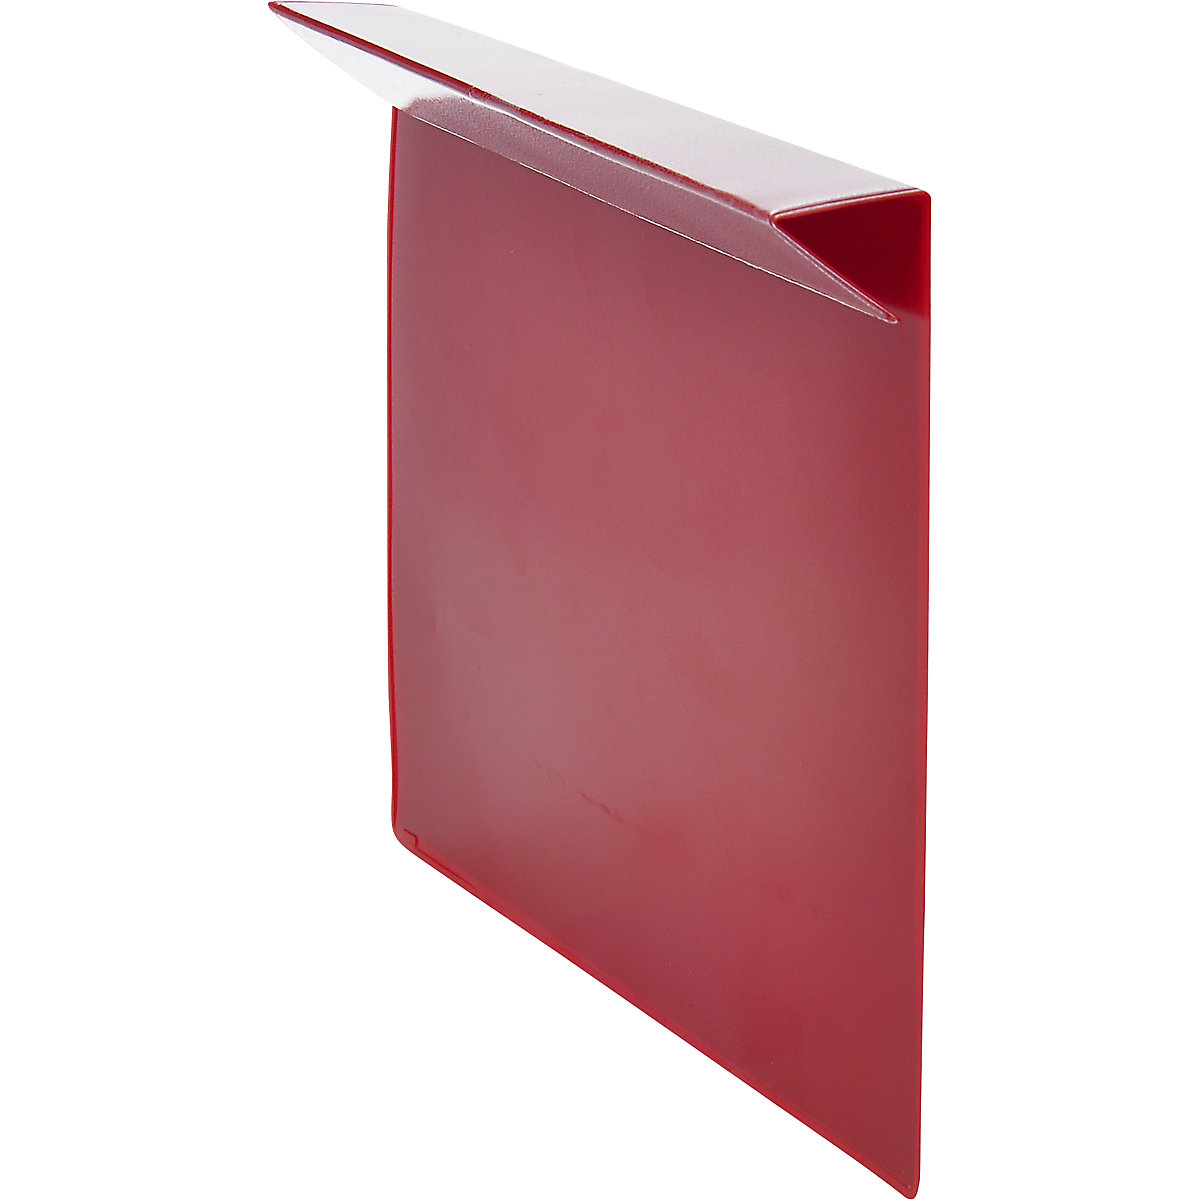 Bolsas de inscrição, embalagem de 100 unid., para caixilhos de sobrepor em madeira, formato do papel A5, vermelho-4